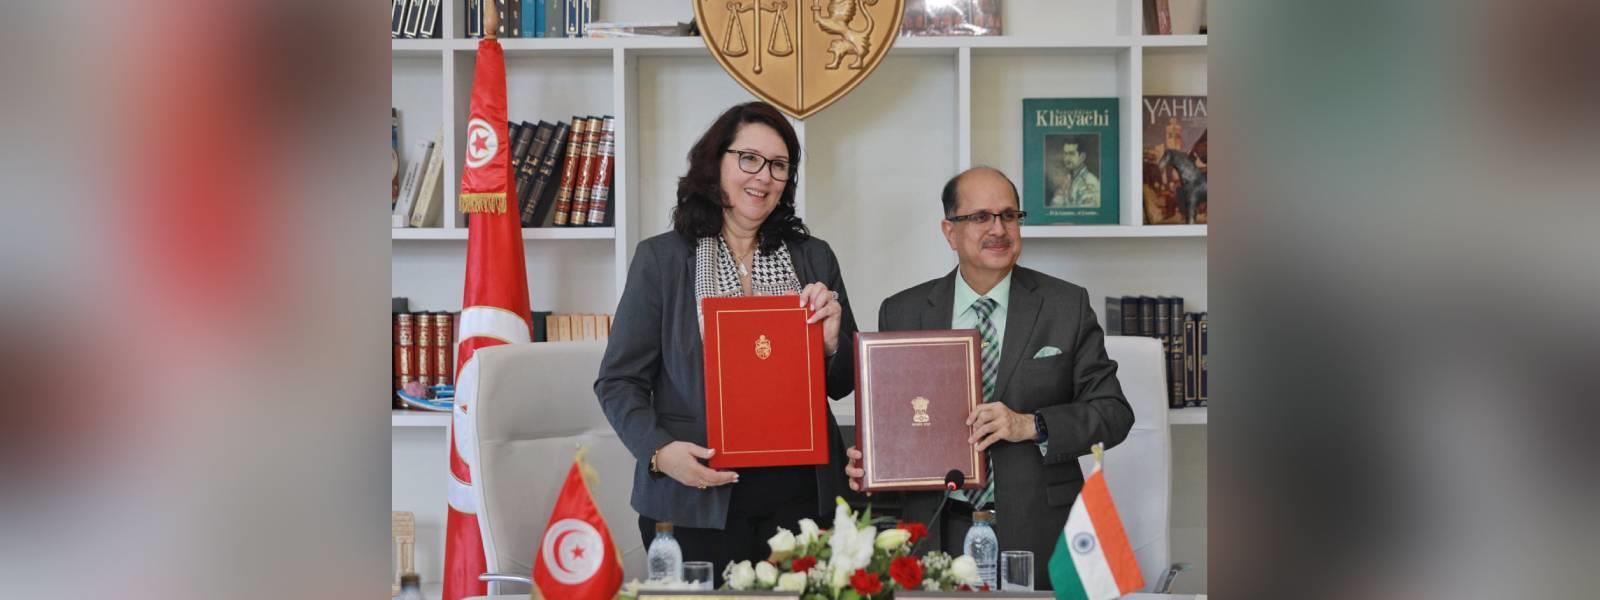 सचिव (सीपीवी और ओआईए) डॉ. औसाफ सईद ने ट्यूनिस में ट्यूनीशिया के सांस्कृतिक मंत्री महामहिम सुश्री. हयेत गुरमाज़ी से मुलाकात की